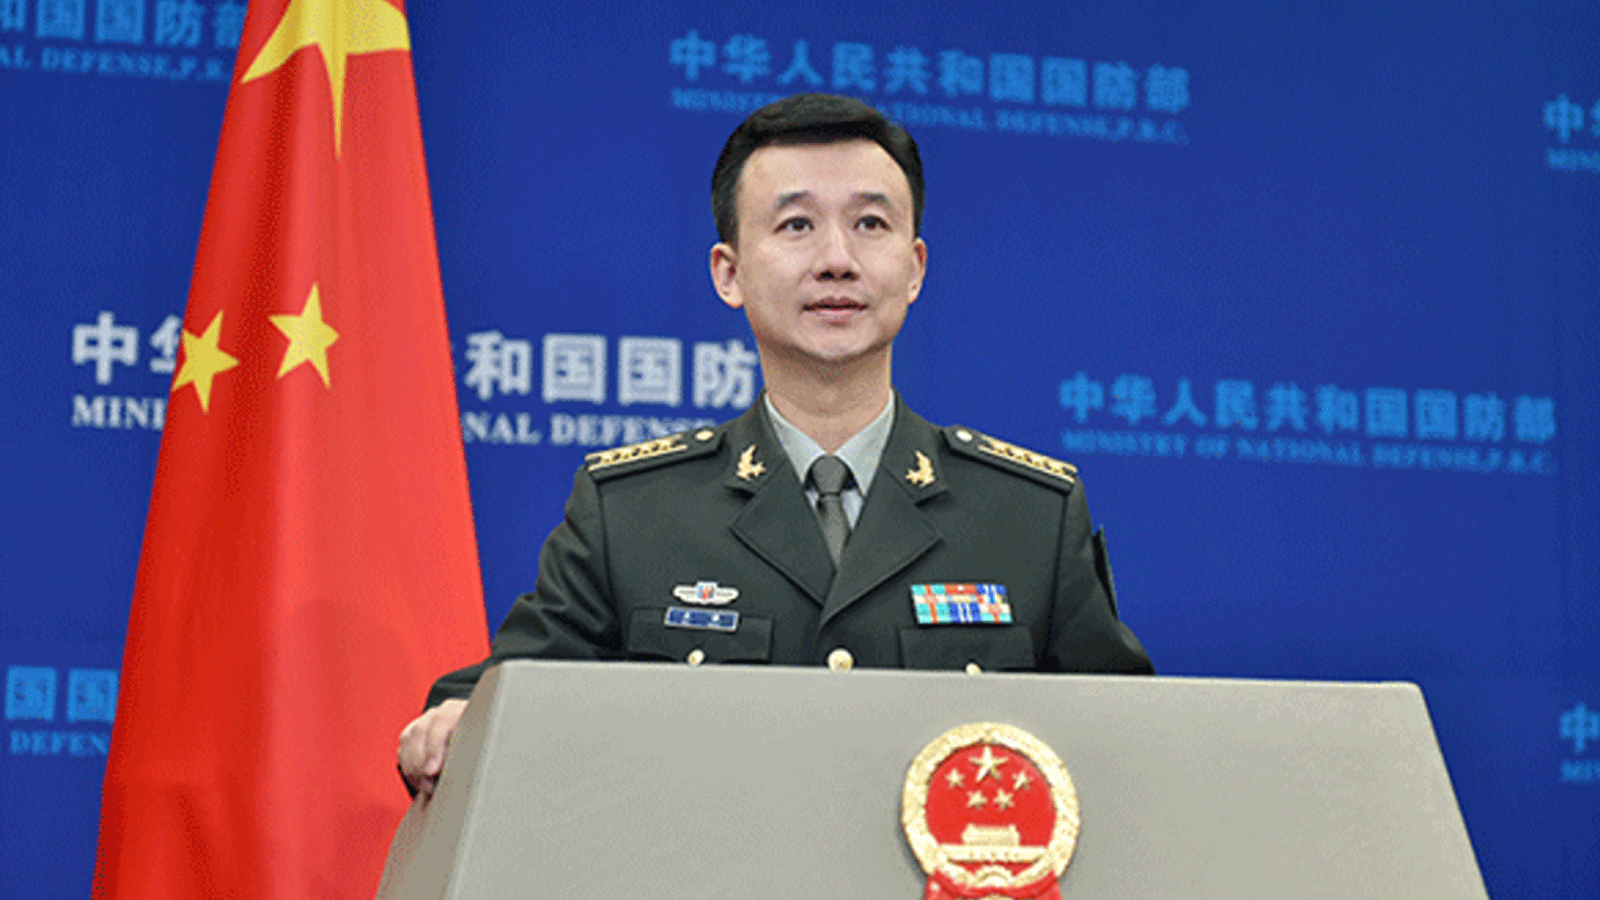 المتحدث باسم وزارة الدفاع الصينية وو تشيان في مؤتمر صحفي